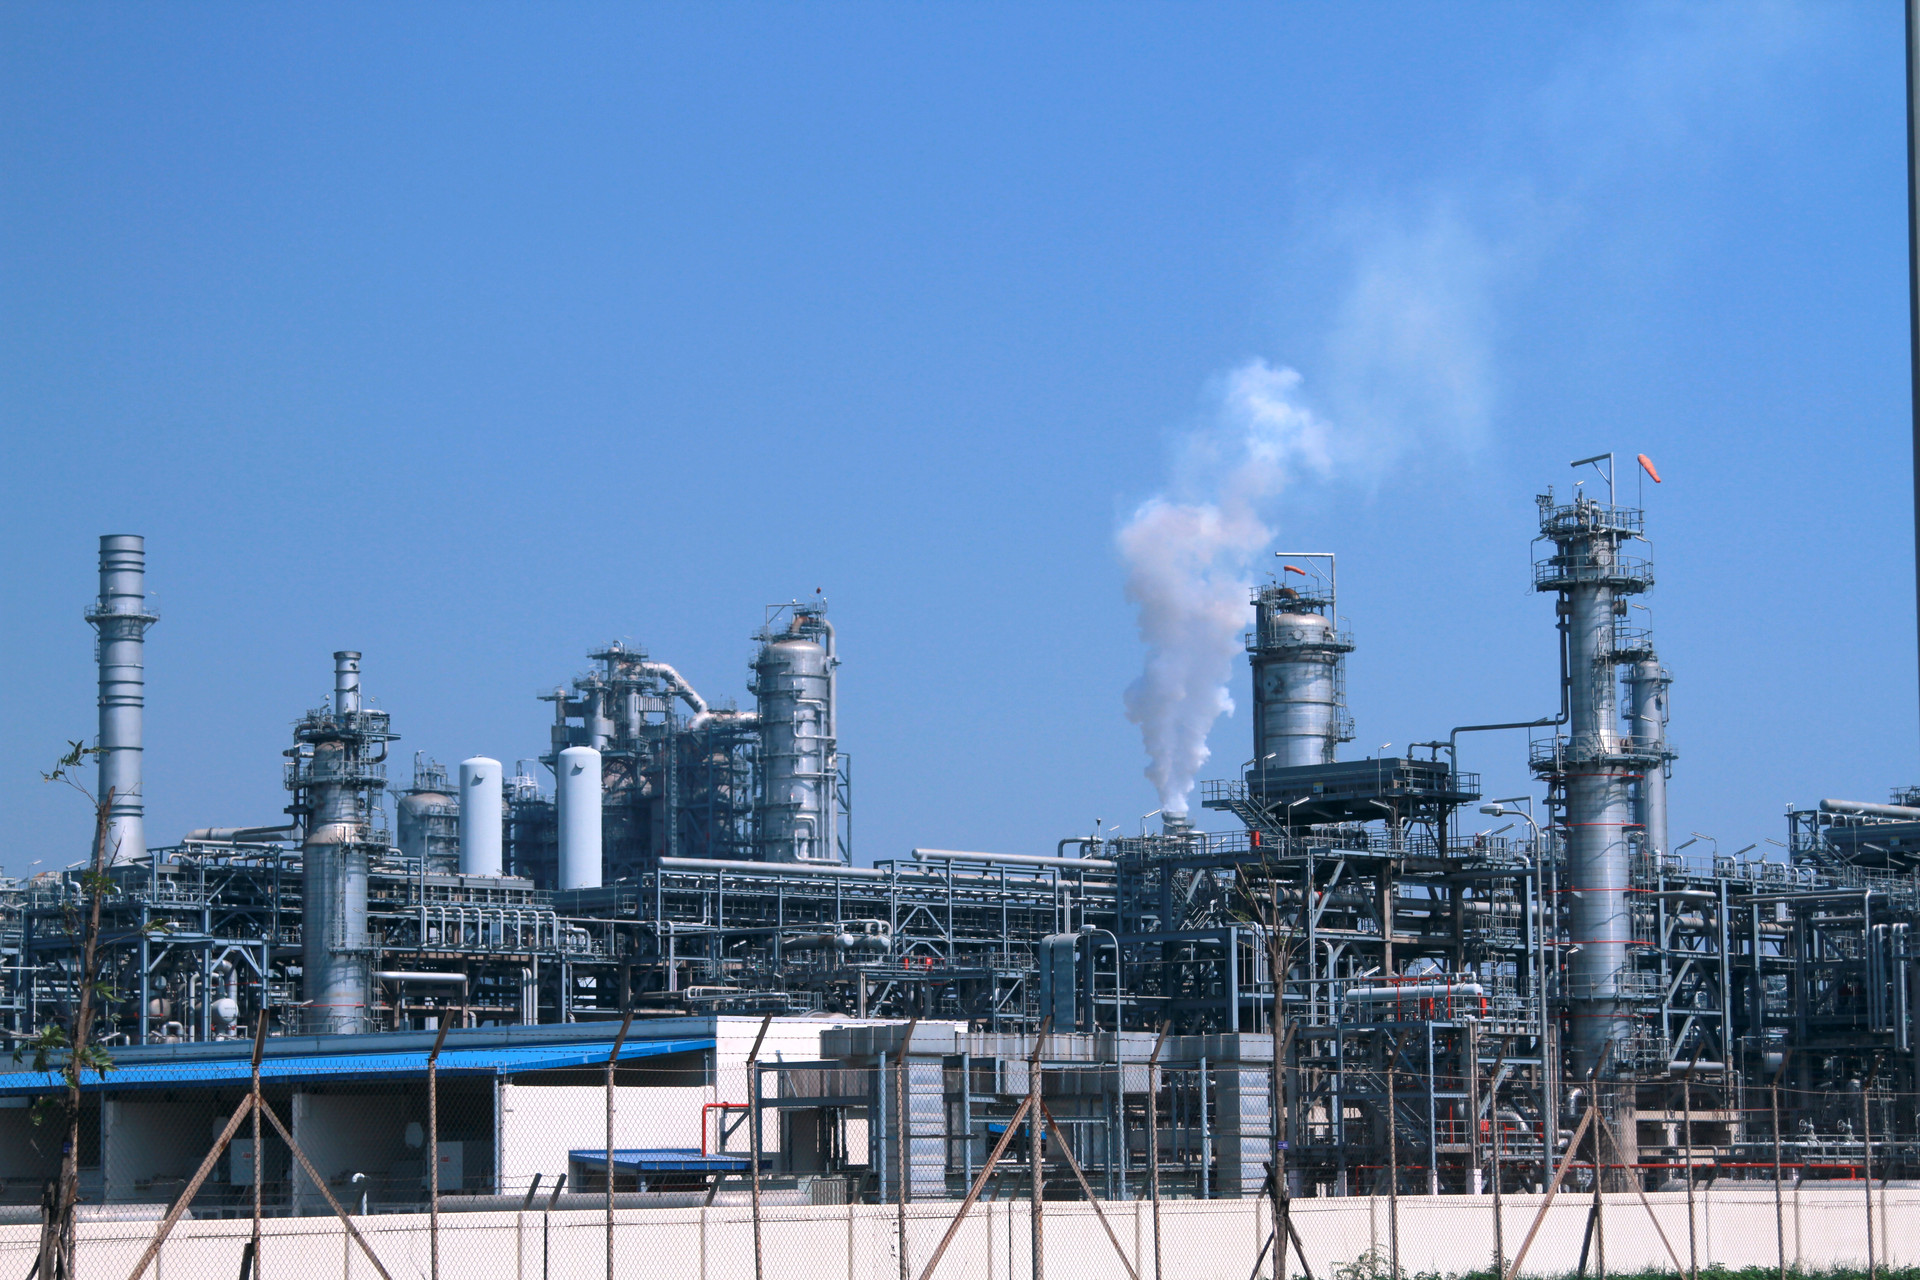 Vấn đề bảo vệ môi trường tại Nhà máy lọc dầu Nghi Sơn luôn được quan tâm